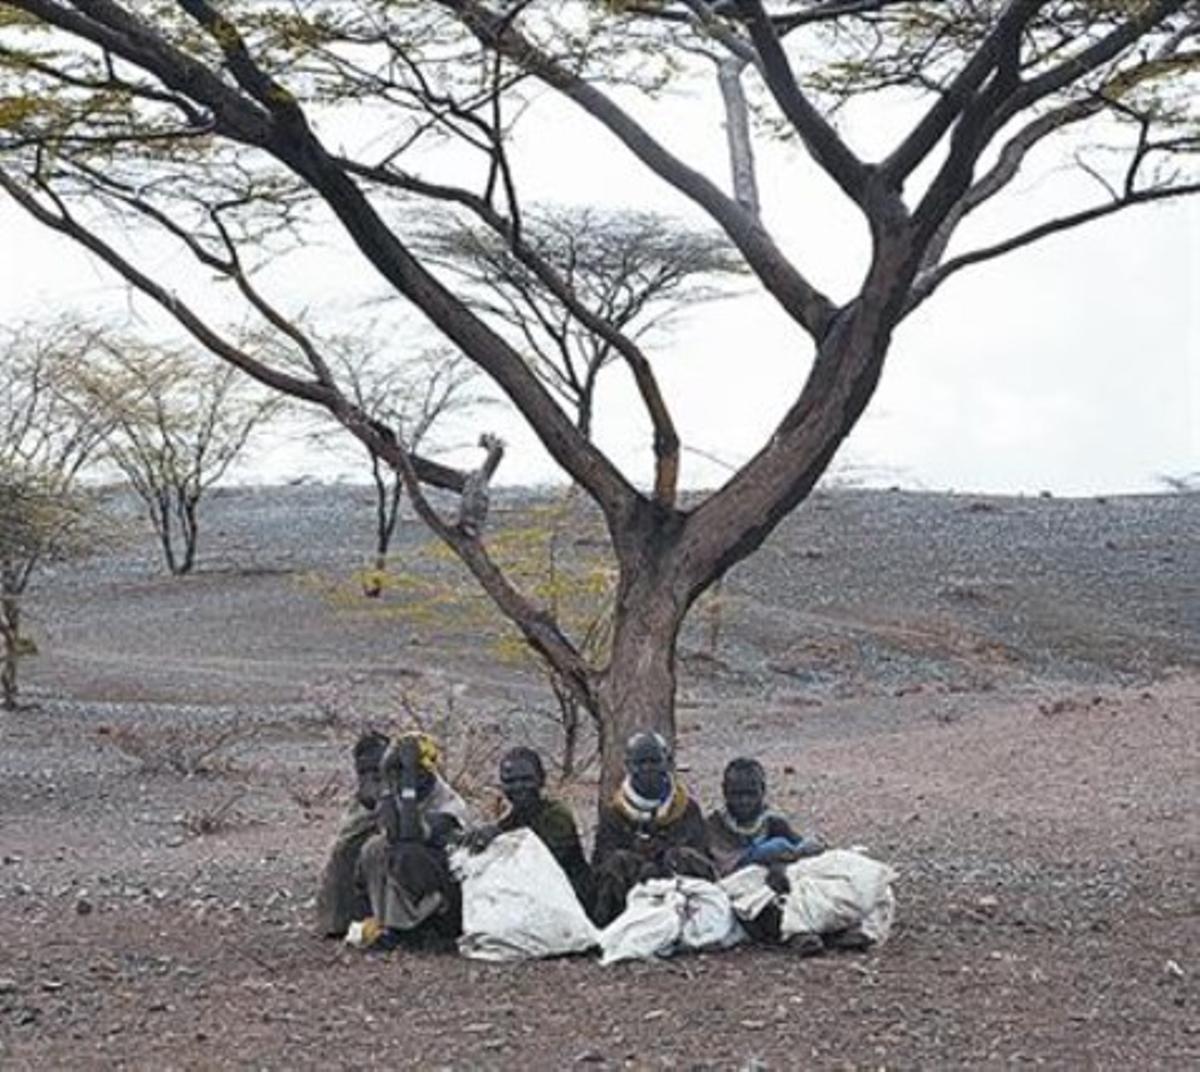 Cinc pastors de Turkana (Kenya) esperen una ració de menjar.